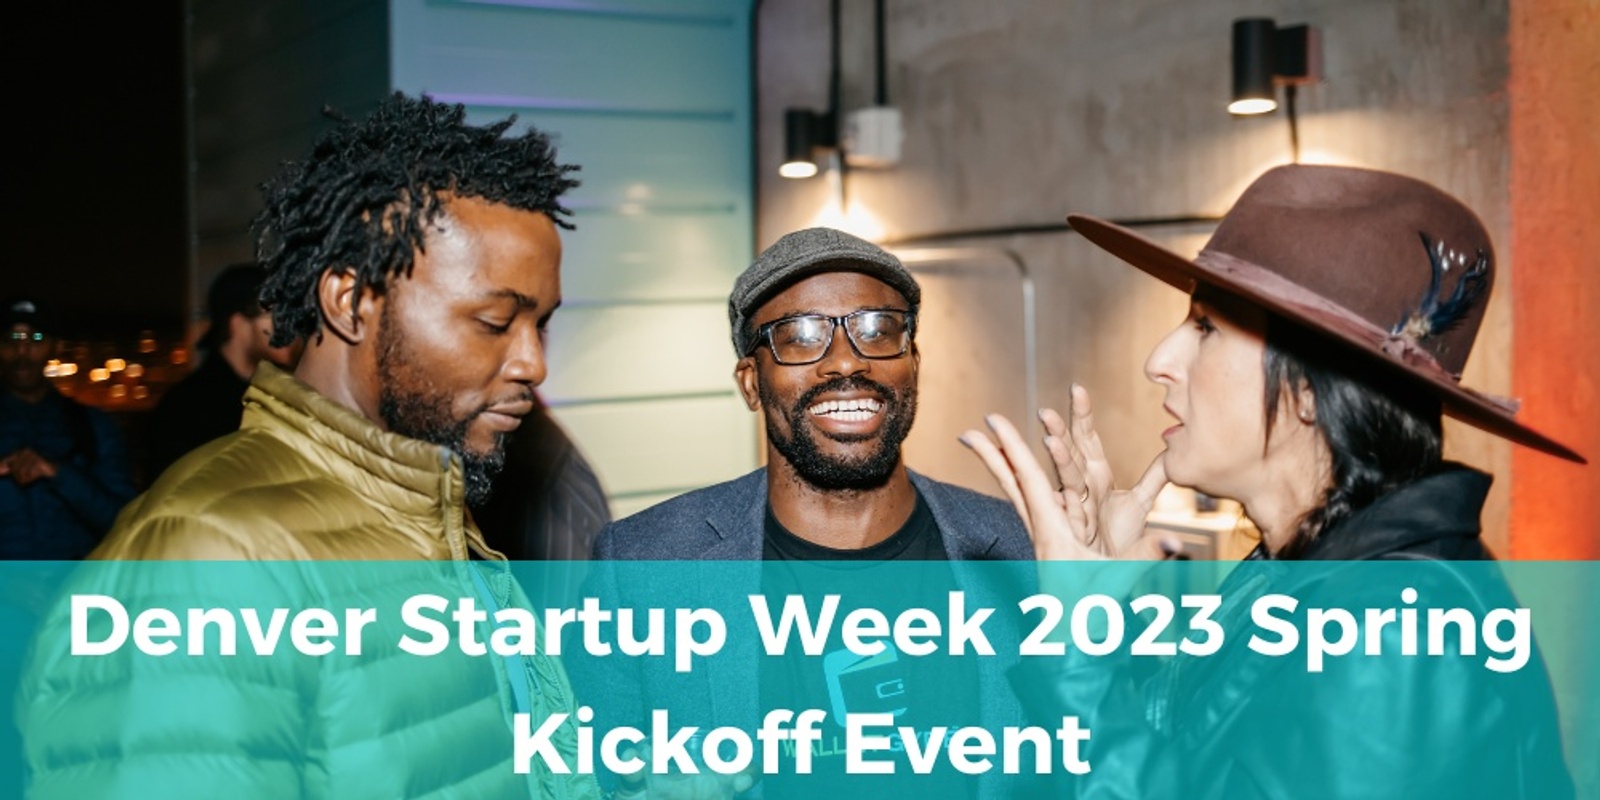 Denver Startup Week 2023 Kick Off Event